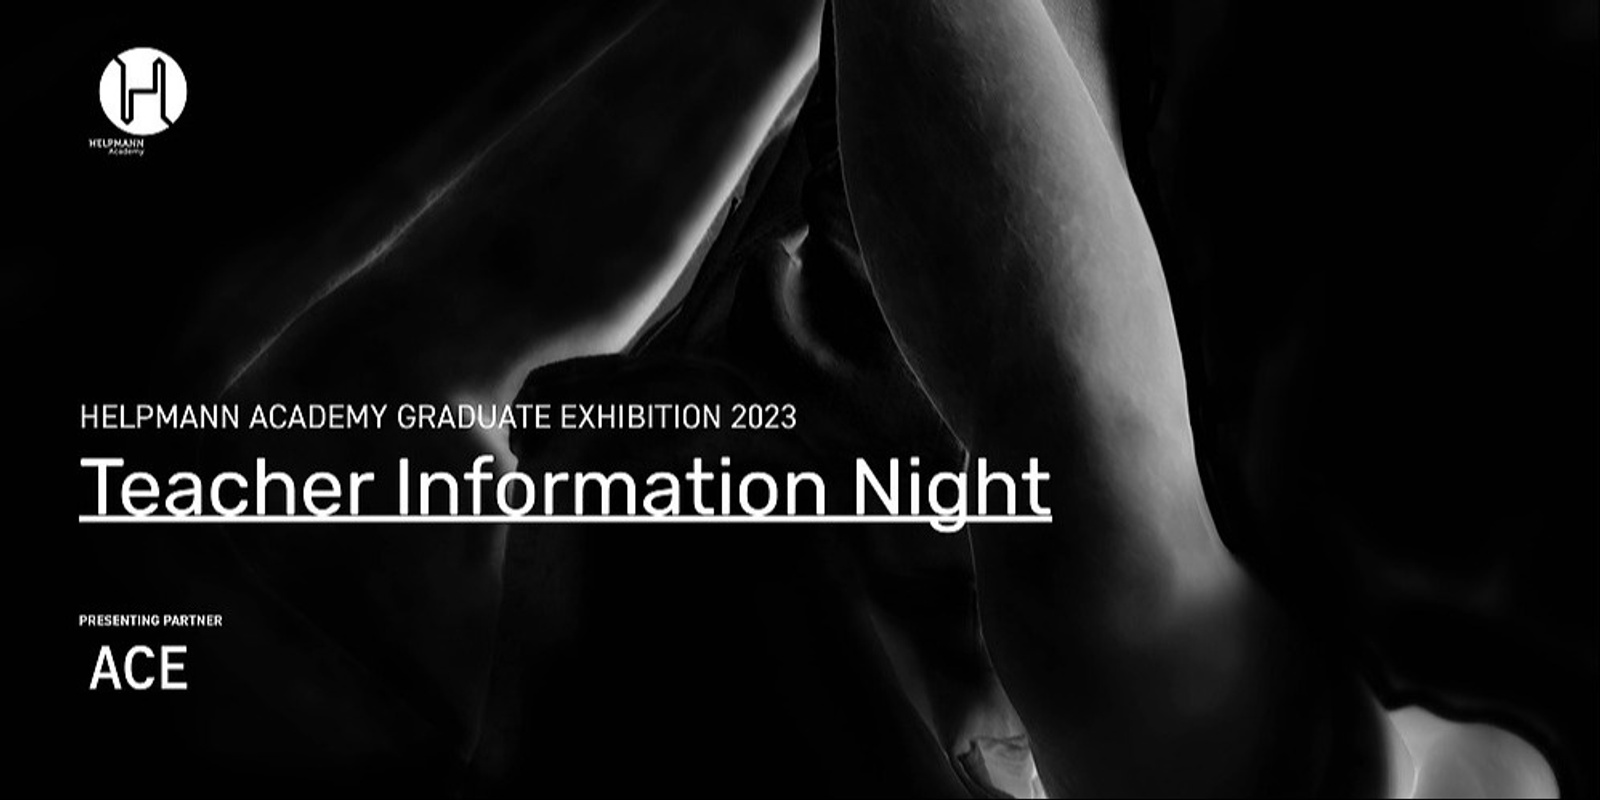 Banner image for Helpmann Academy Graduate Exhibition 2023 Teacher Information Night